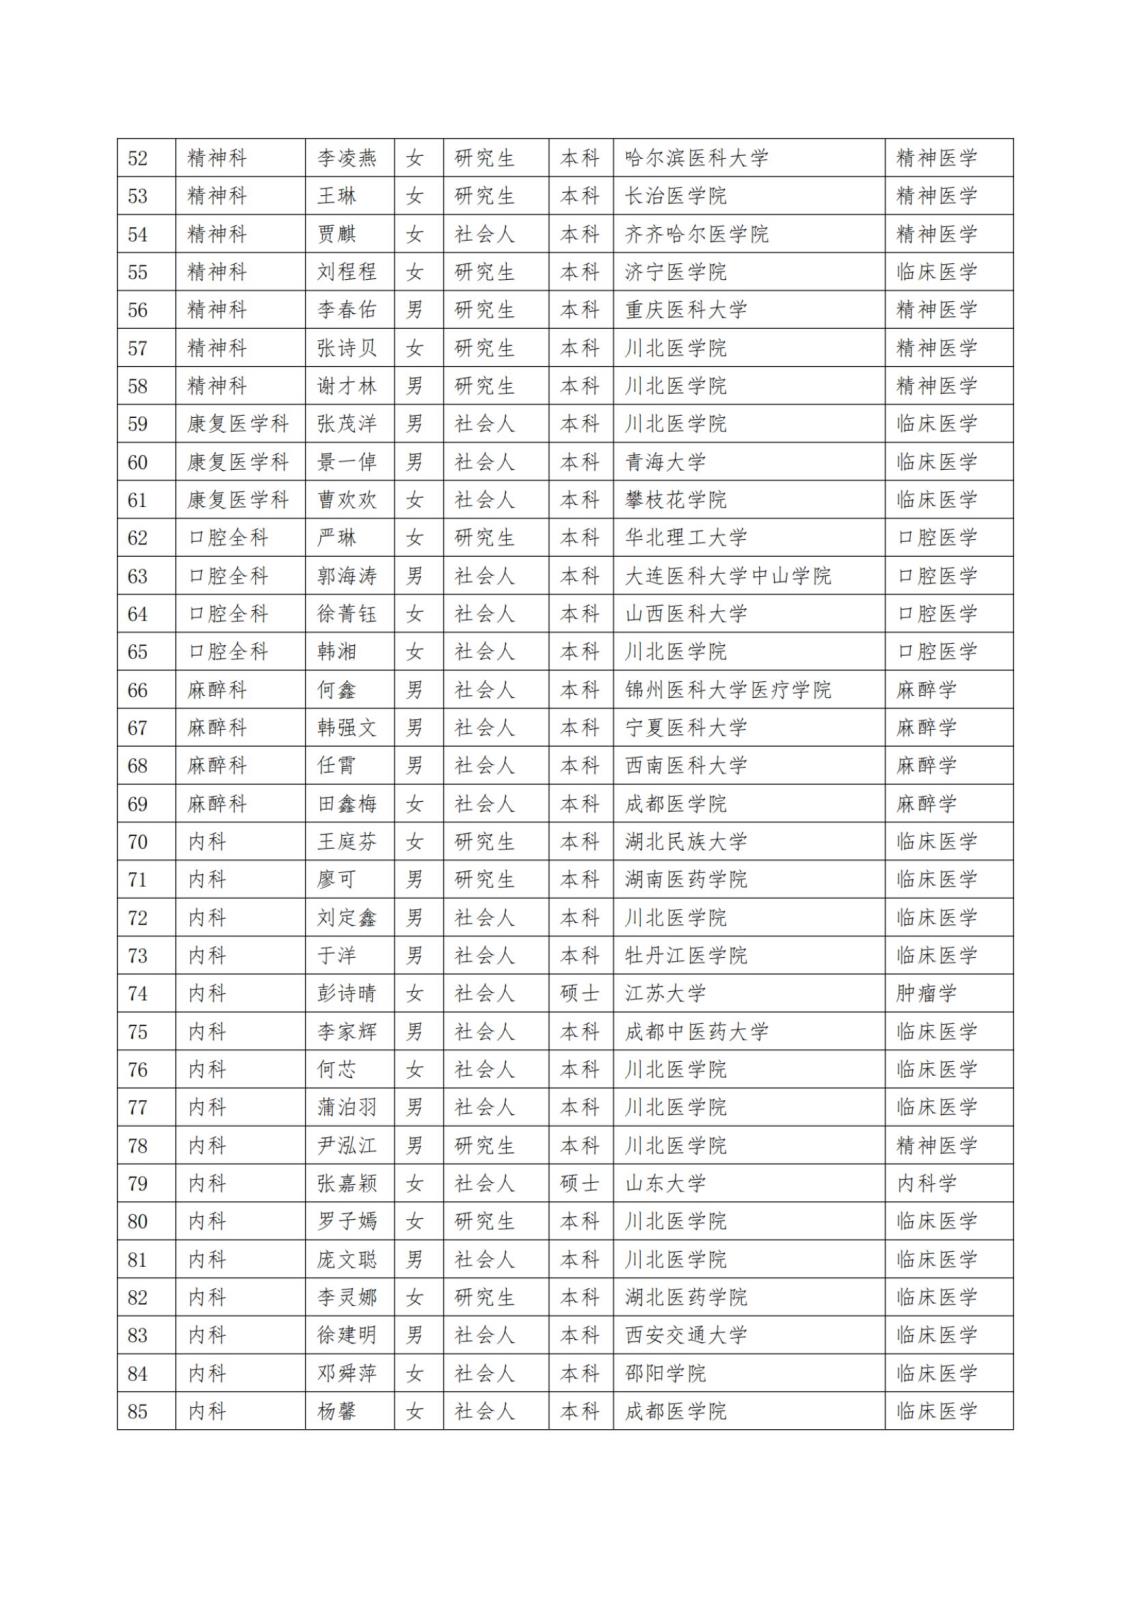 2023级住院医师规范化培训招生录取结果公示_纯图版_02.jpg